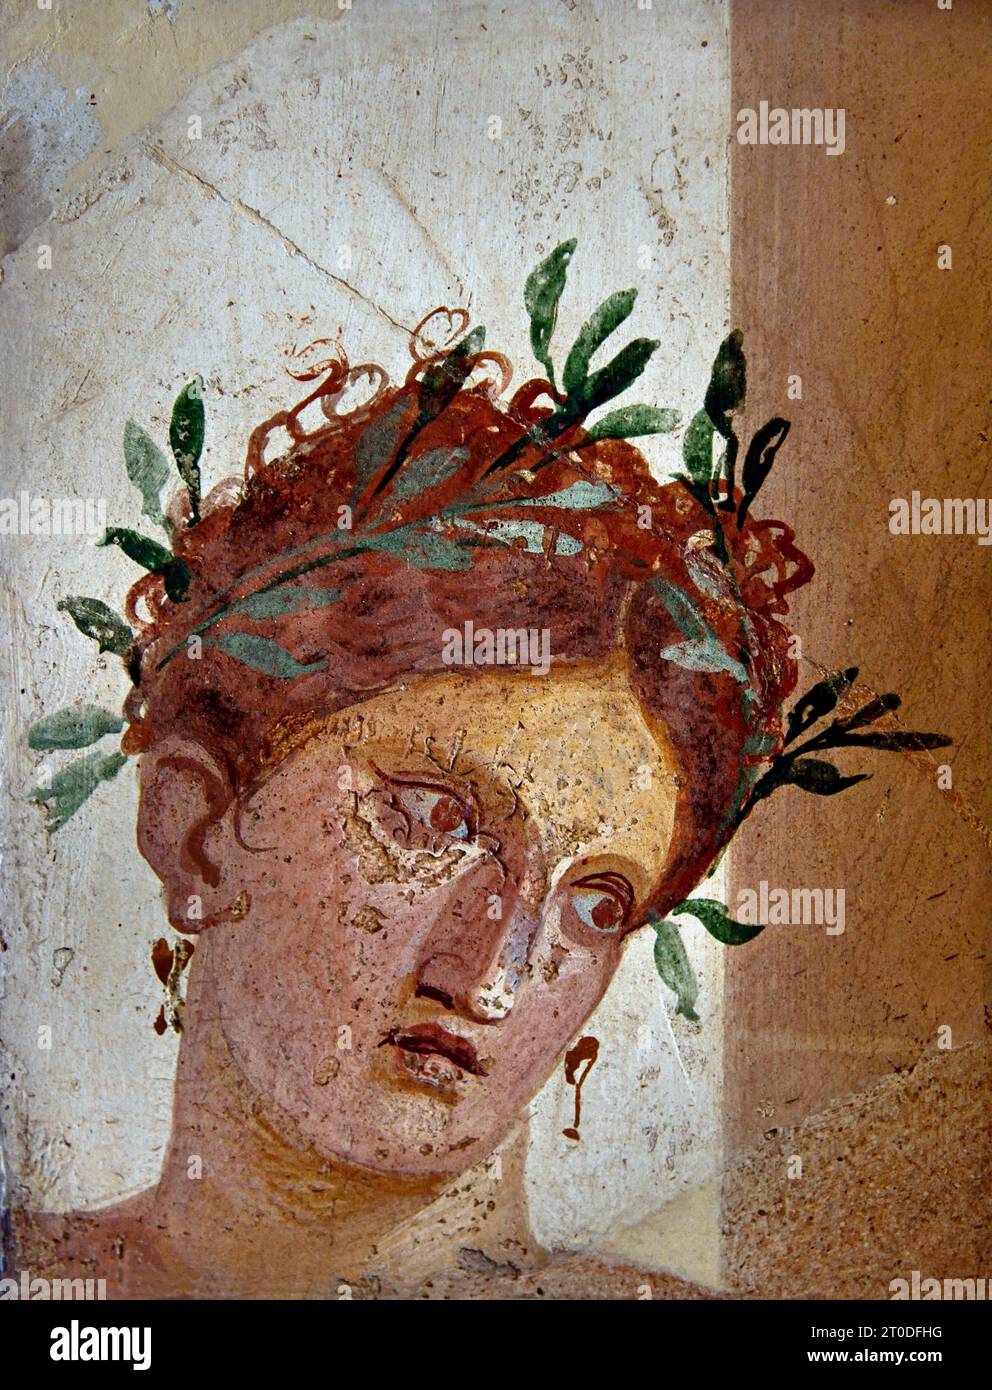 Ragazza con una corona di fronde. 20-10 A.C. Da Ercolano. La città romana di fresco Pompei si trova vicino a Napoli, nella regione Campania. Pompei fu sepolta sotto 4-6 m di cenere vulcanica e pomice nell'eruzione del Vesuvio nel 79 d.C. Italia Foto Stock